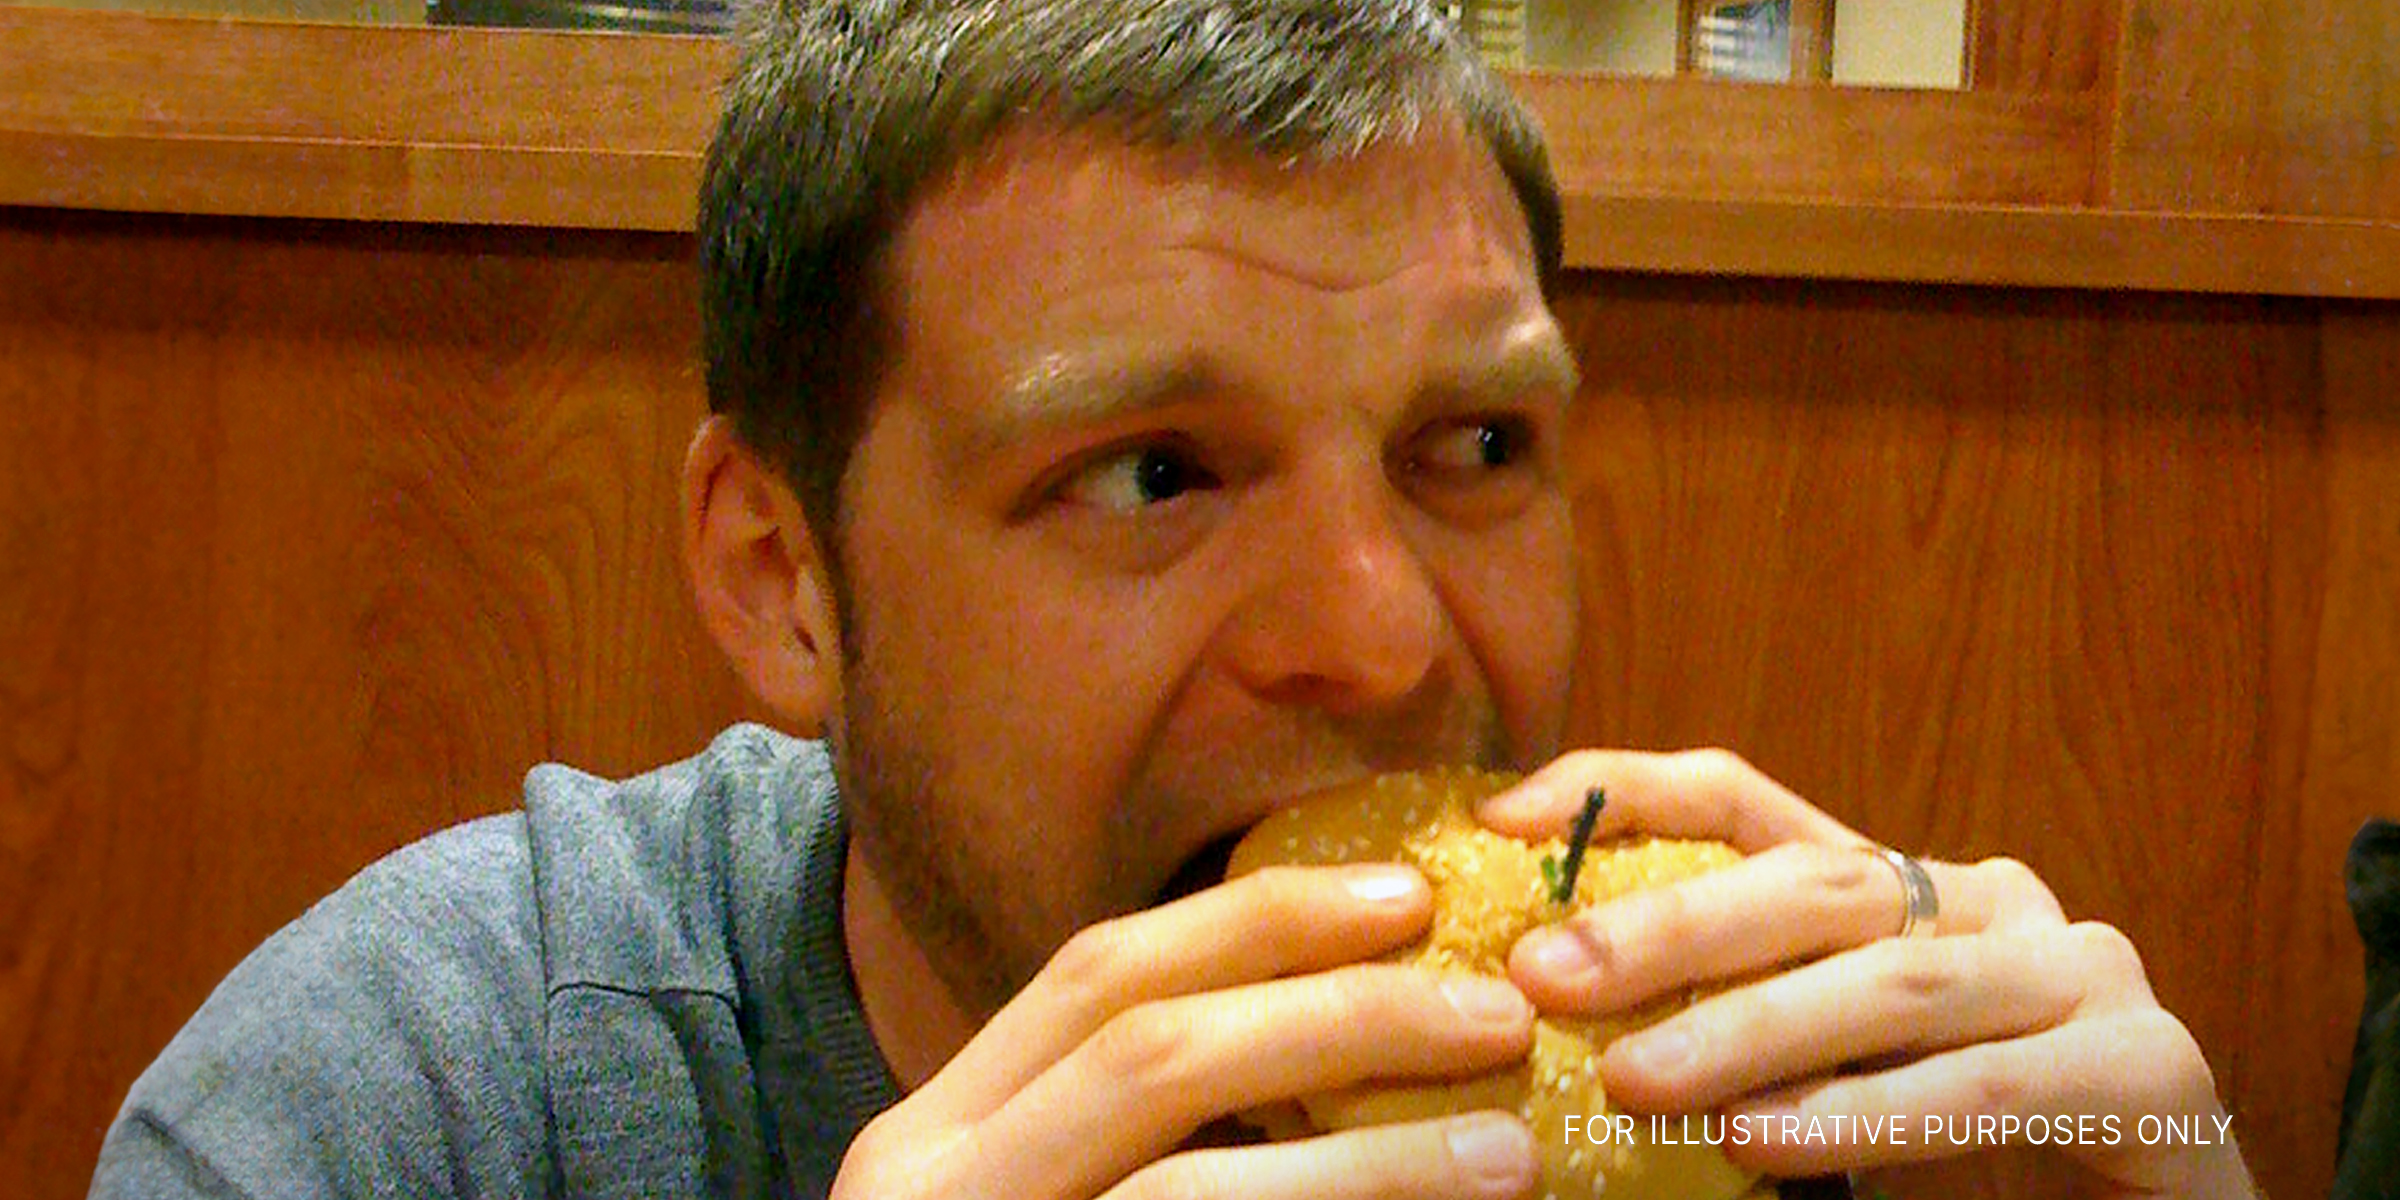 Un homme d'âge mur mangeant un burger Source : flickr.com/jamiejohndavies/CC BY 2.0